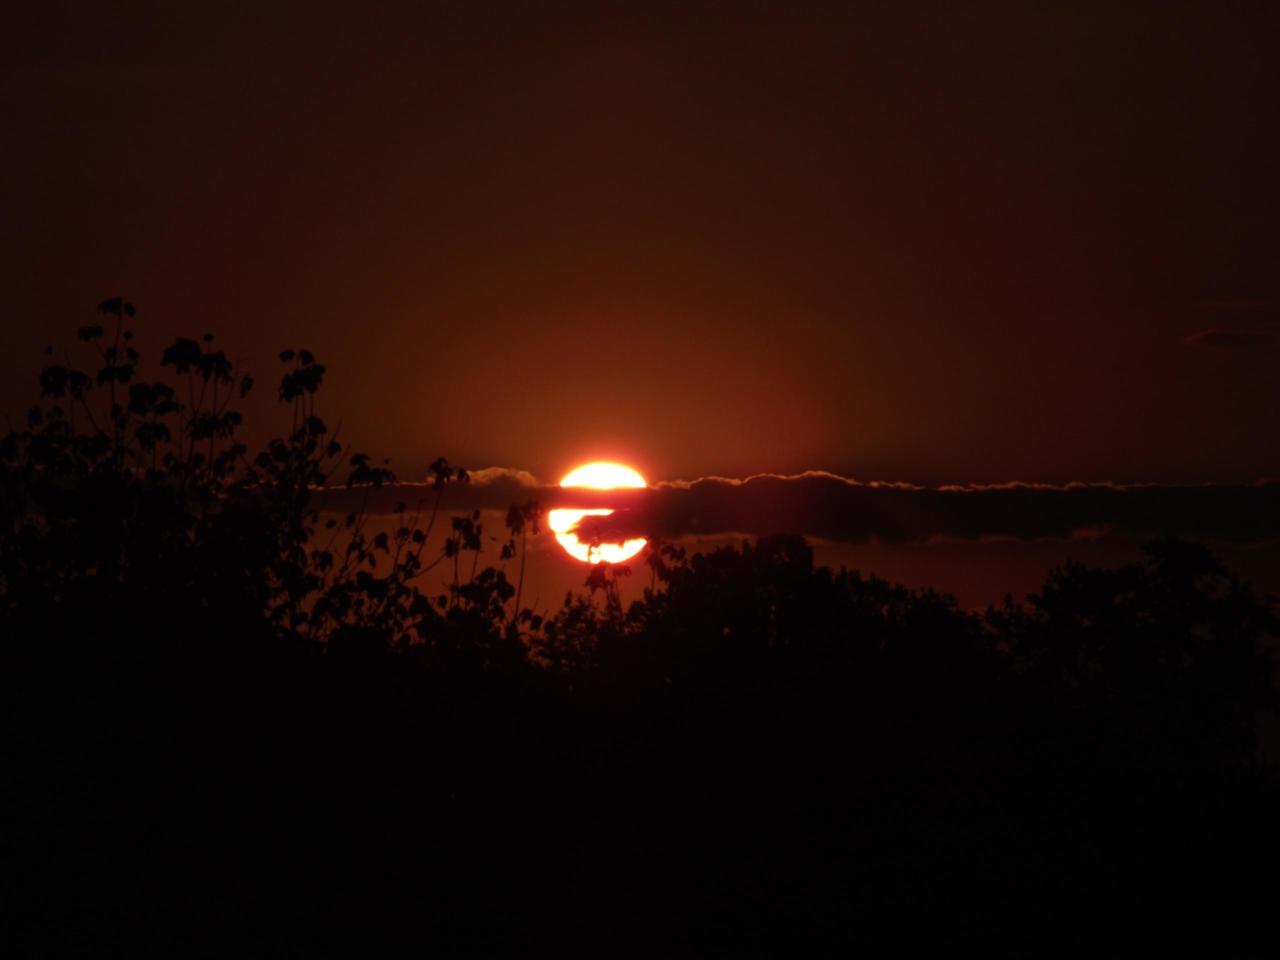 Sonne vor Untergang, nahe dem Horizont hinter schmalem Wolkenband, im Vordergrund Sträucher, schon dunkel